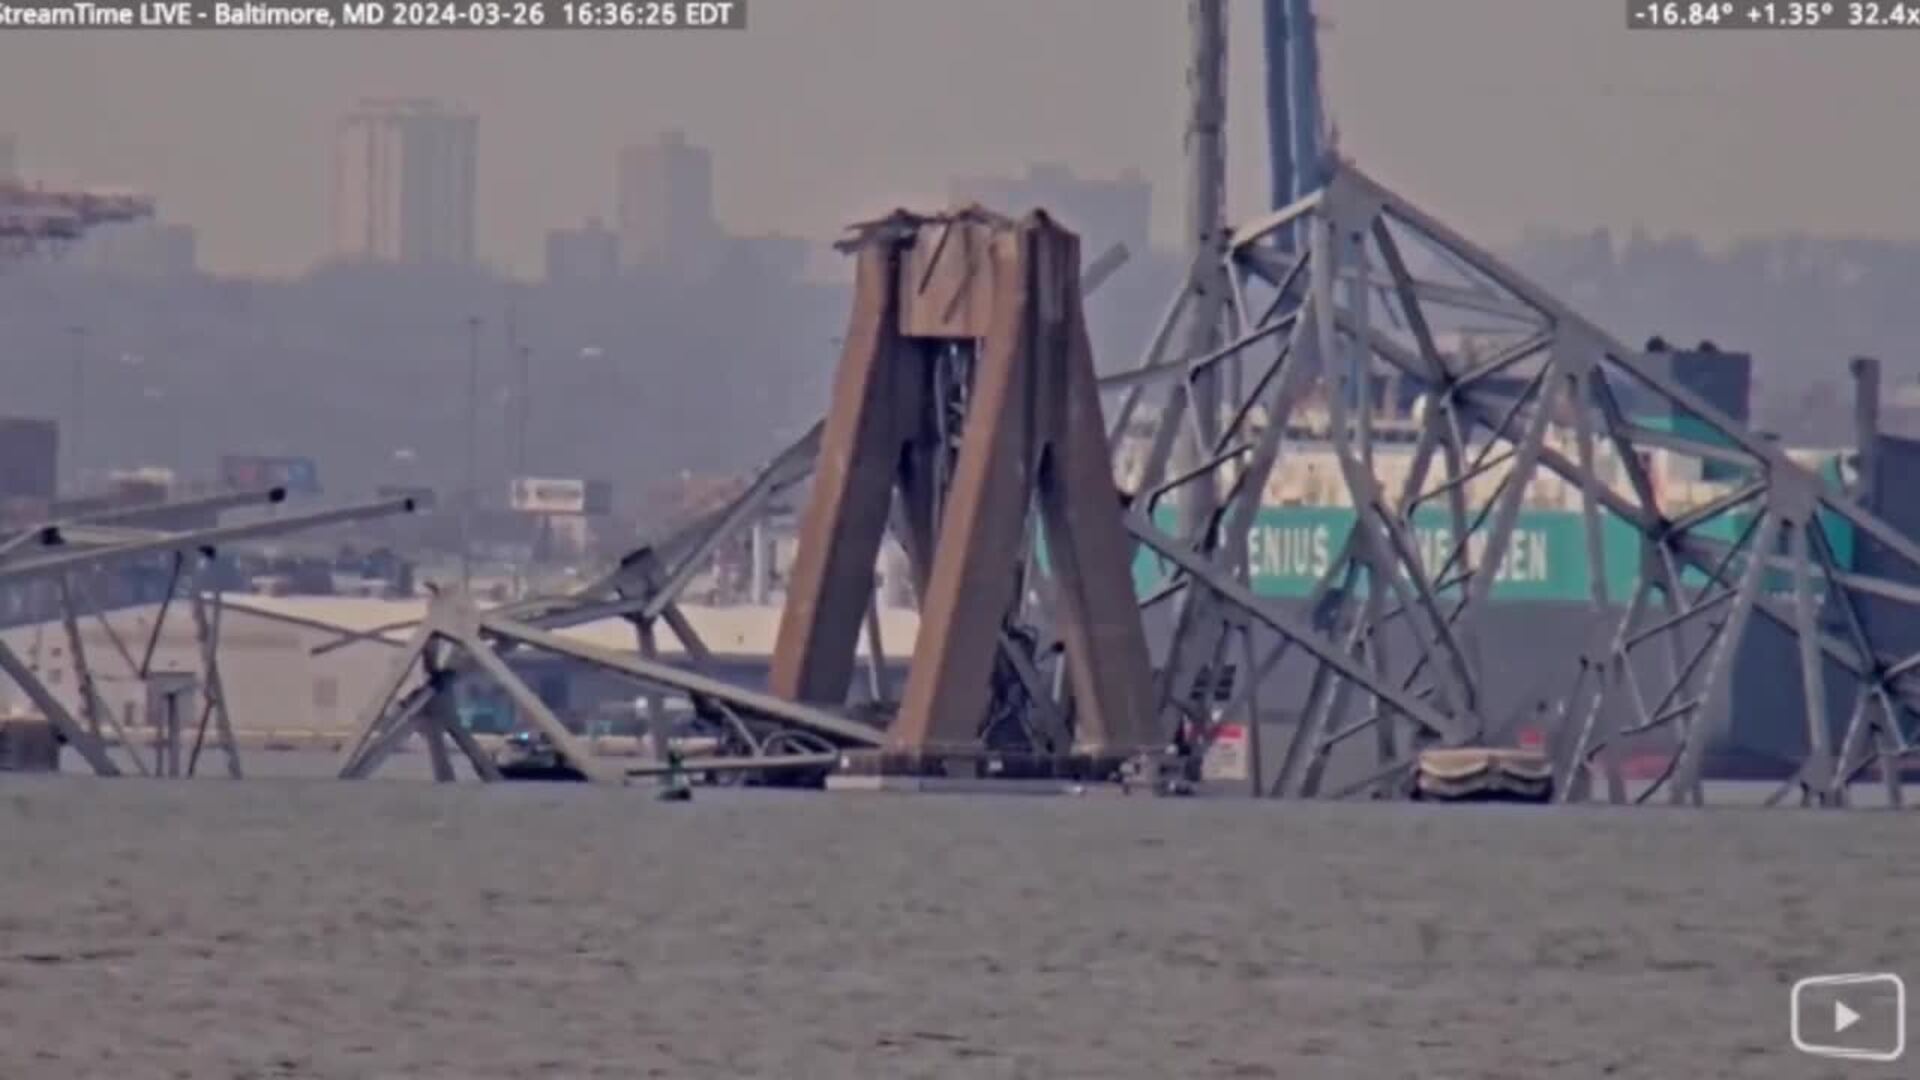 Continúa la búsqueda de los seis desaparecidos tra el accidente en el puente de Baltimore